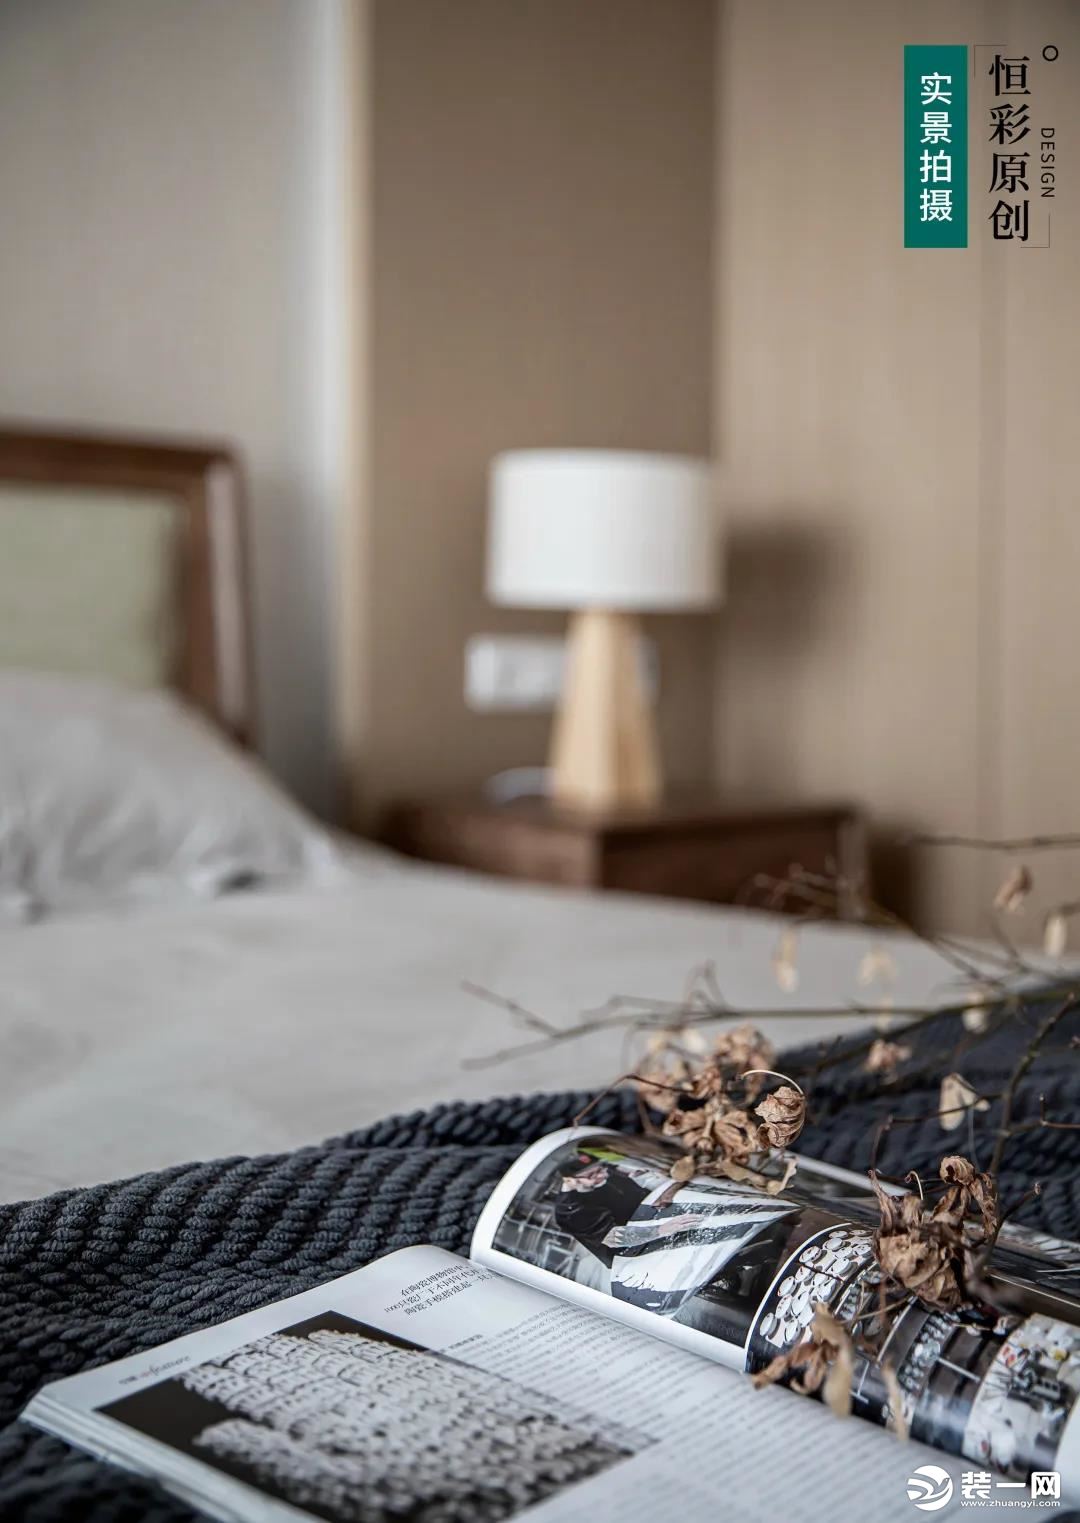 米色系的床品在颜色和材质上都非常日系，搭配简单的北欧风小家具，温暖惬意。